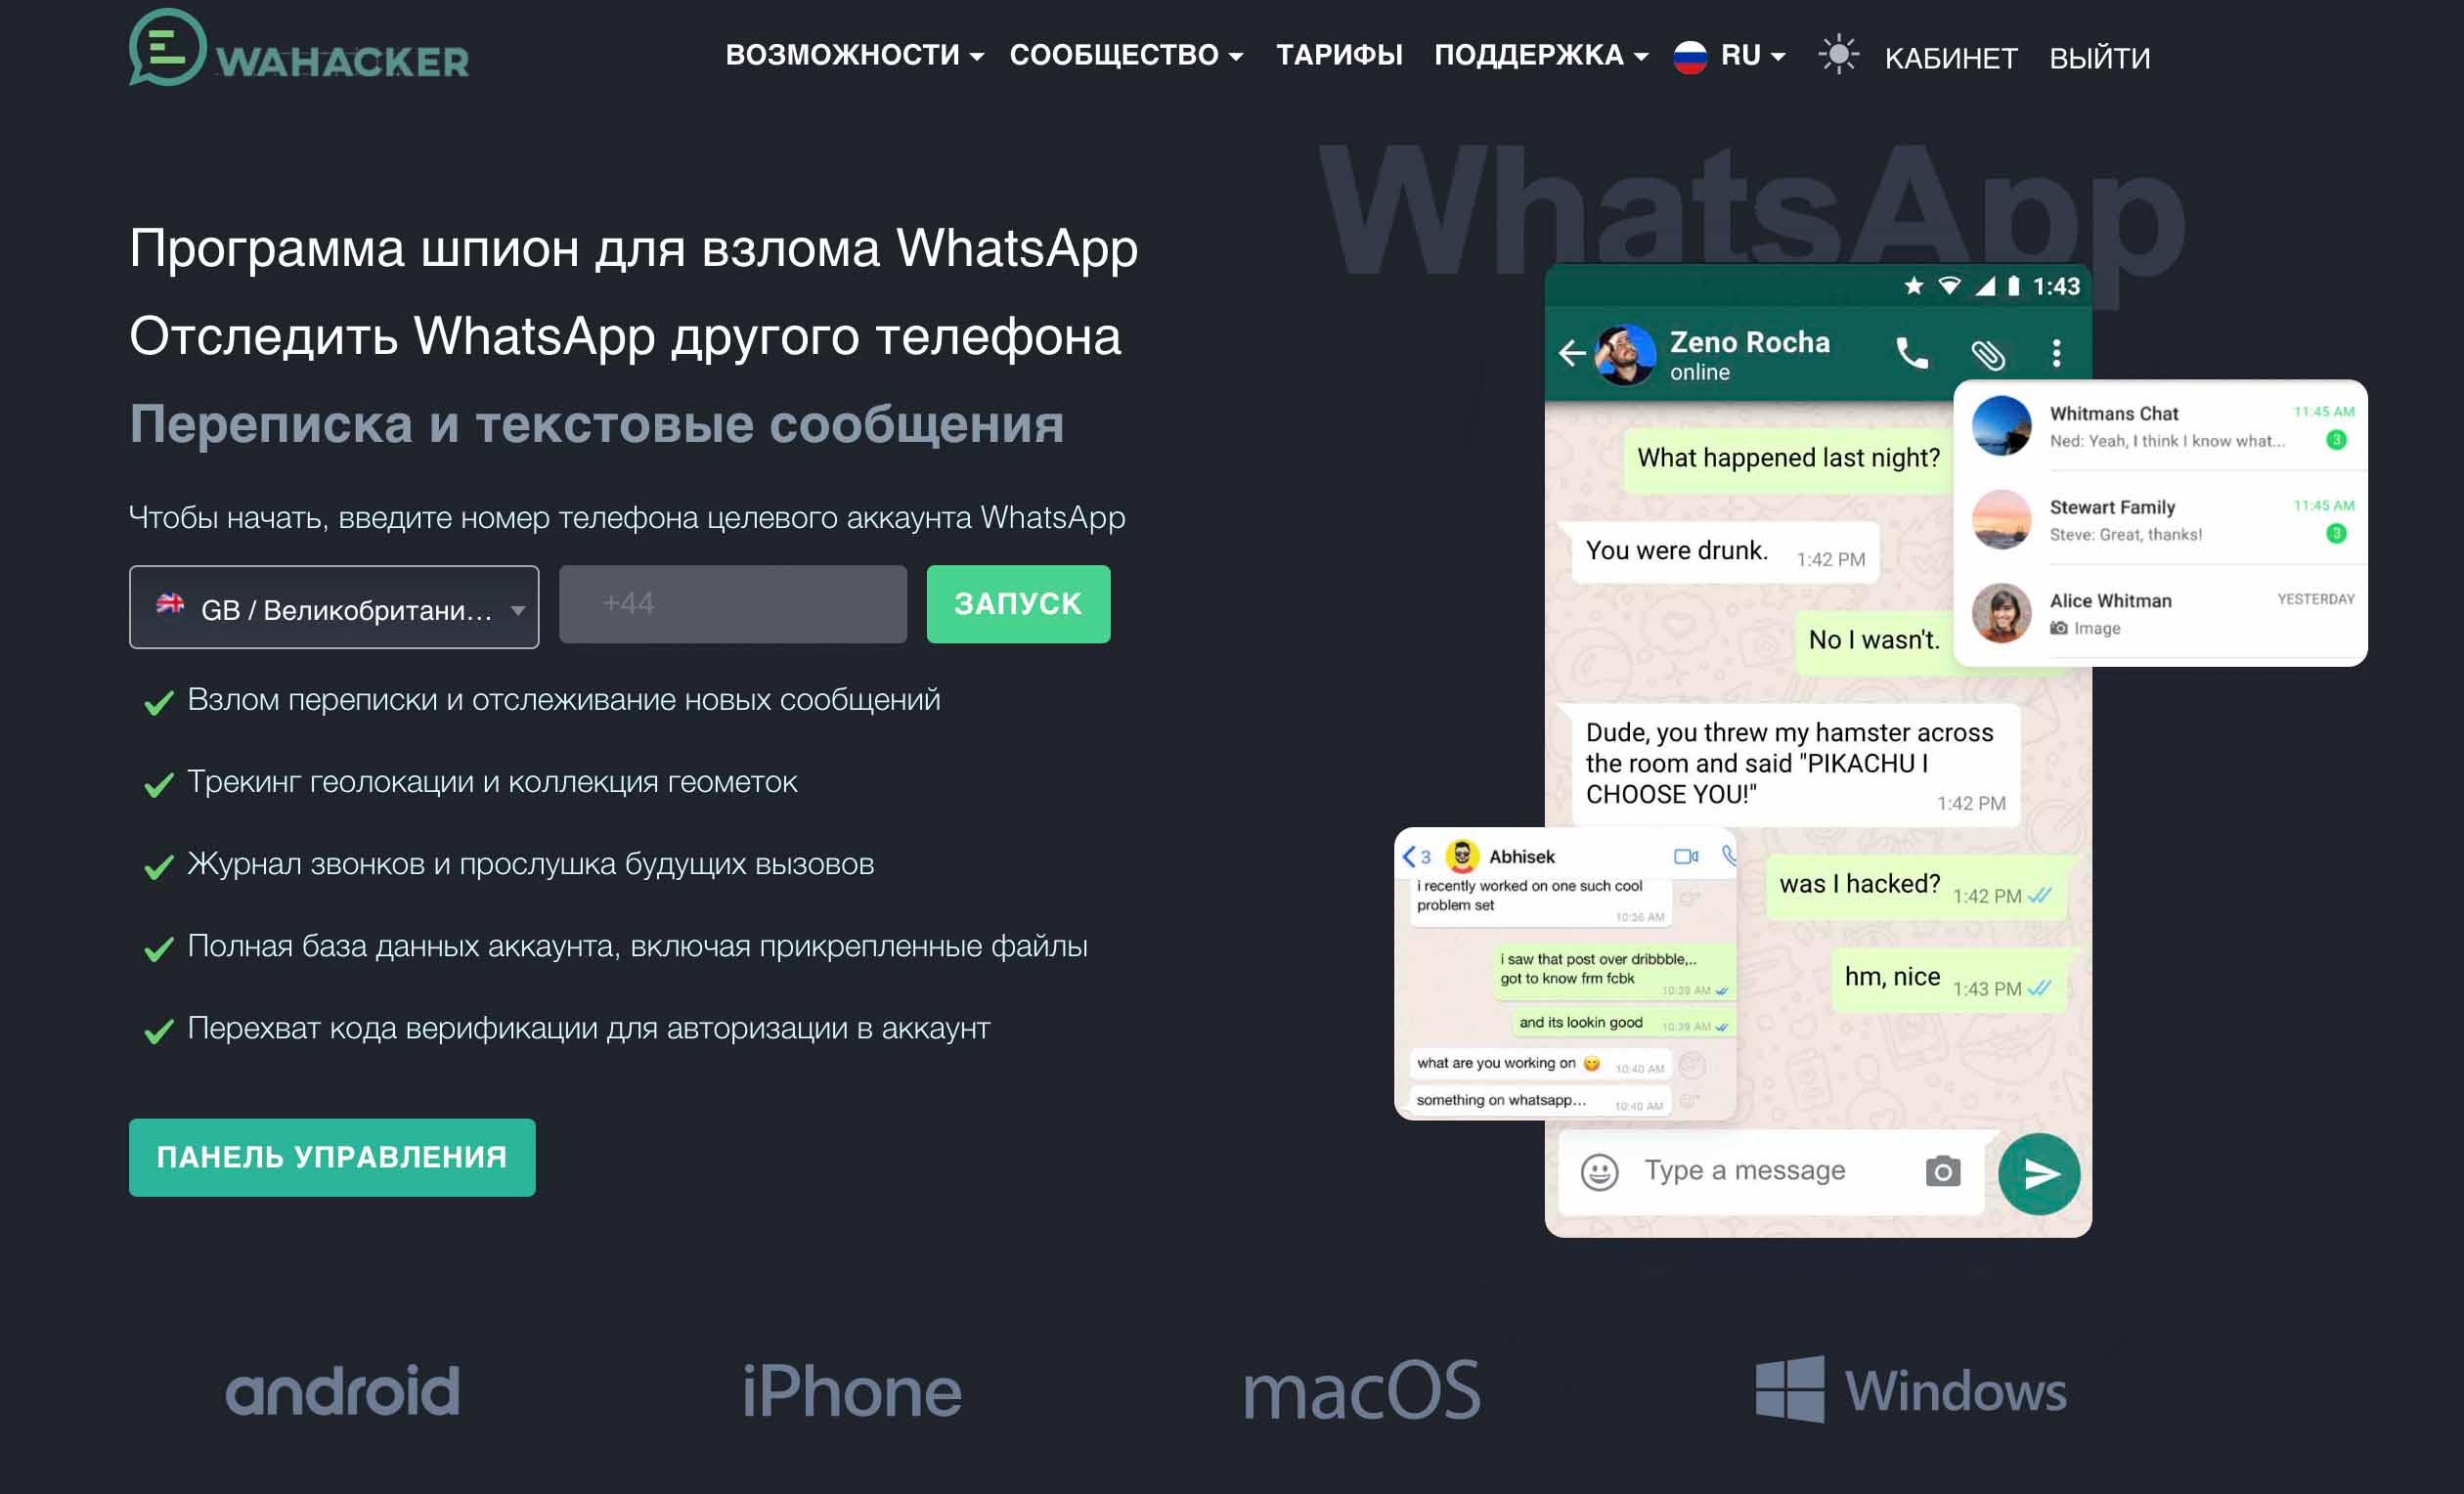 Lanciate WaHacker per leggere i messaggi degli altri su WhatsApp!